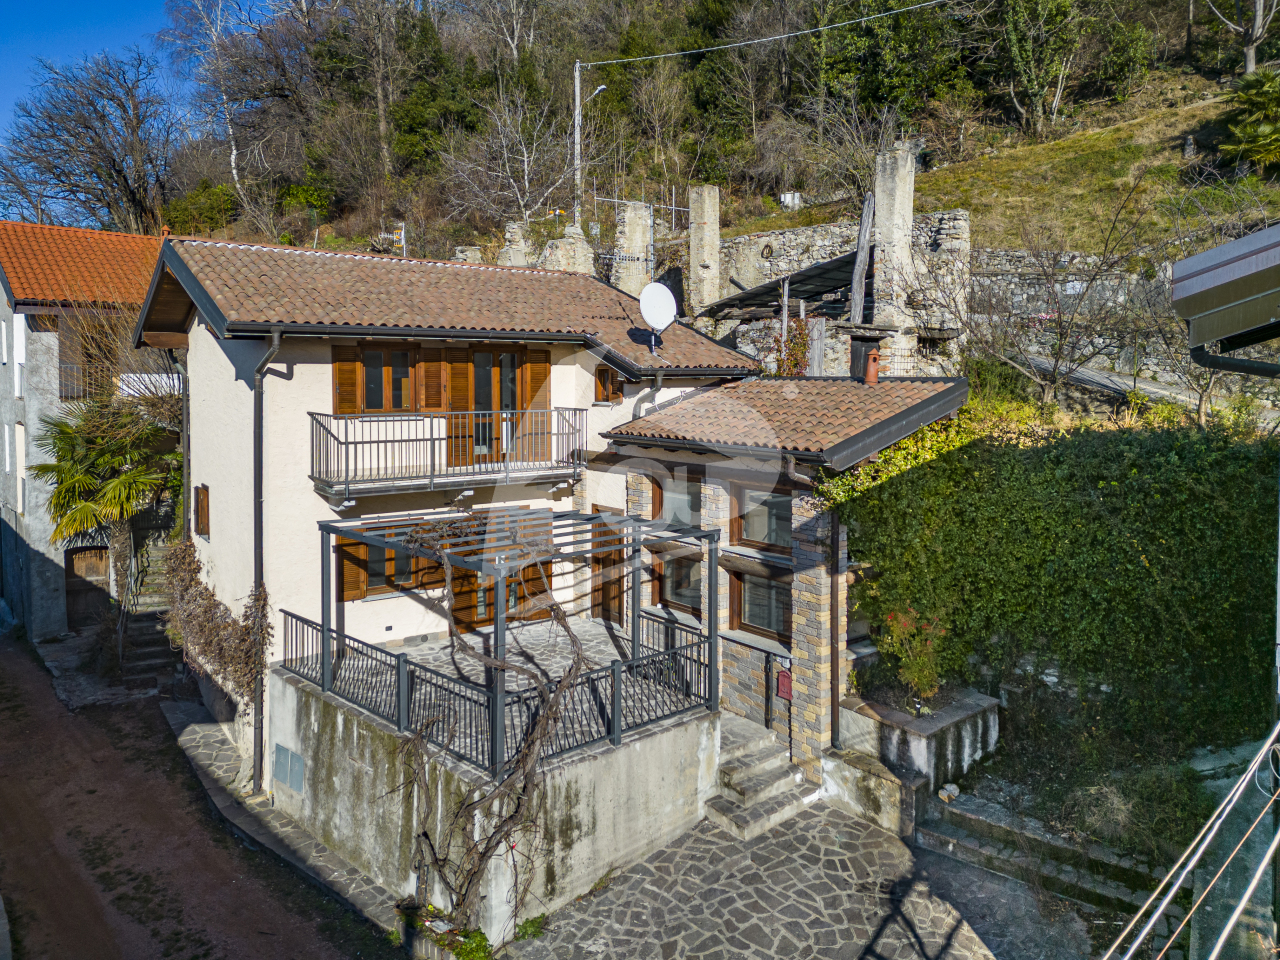 Rustico / Casale in vendita a Laveno-Mombello, 5 locali, prezzo € 200.000 | PortaleAgenzieImmobiliari.it